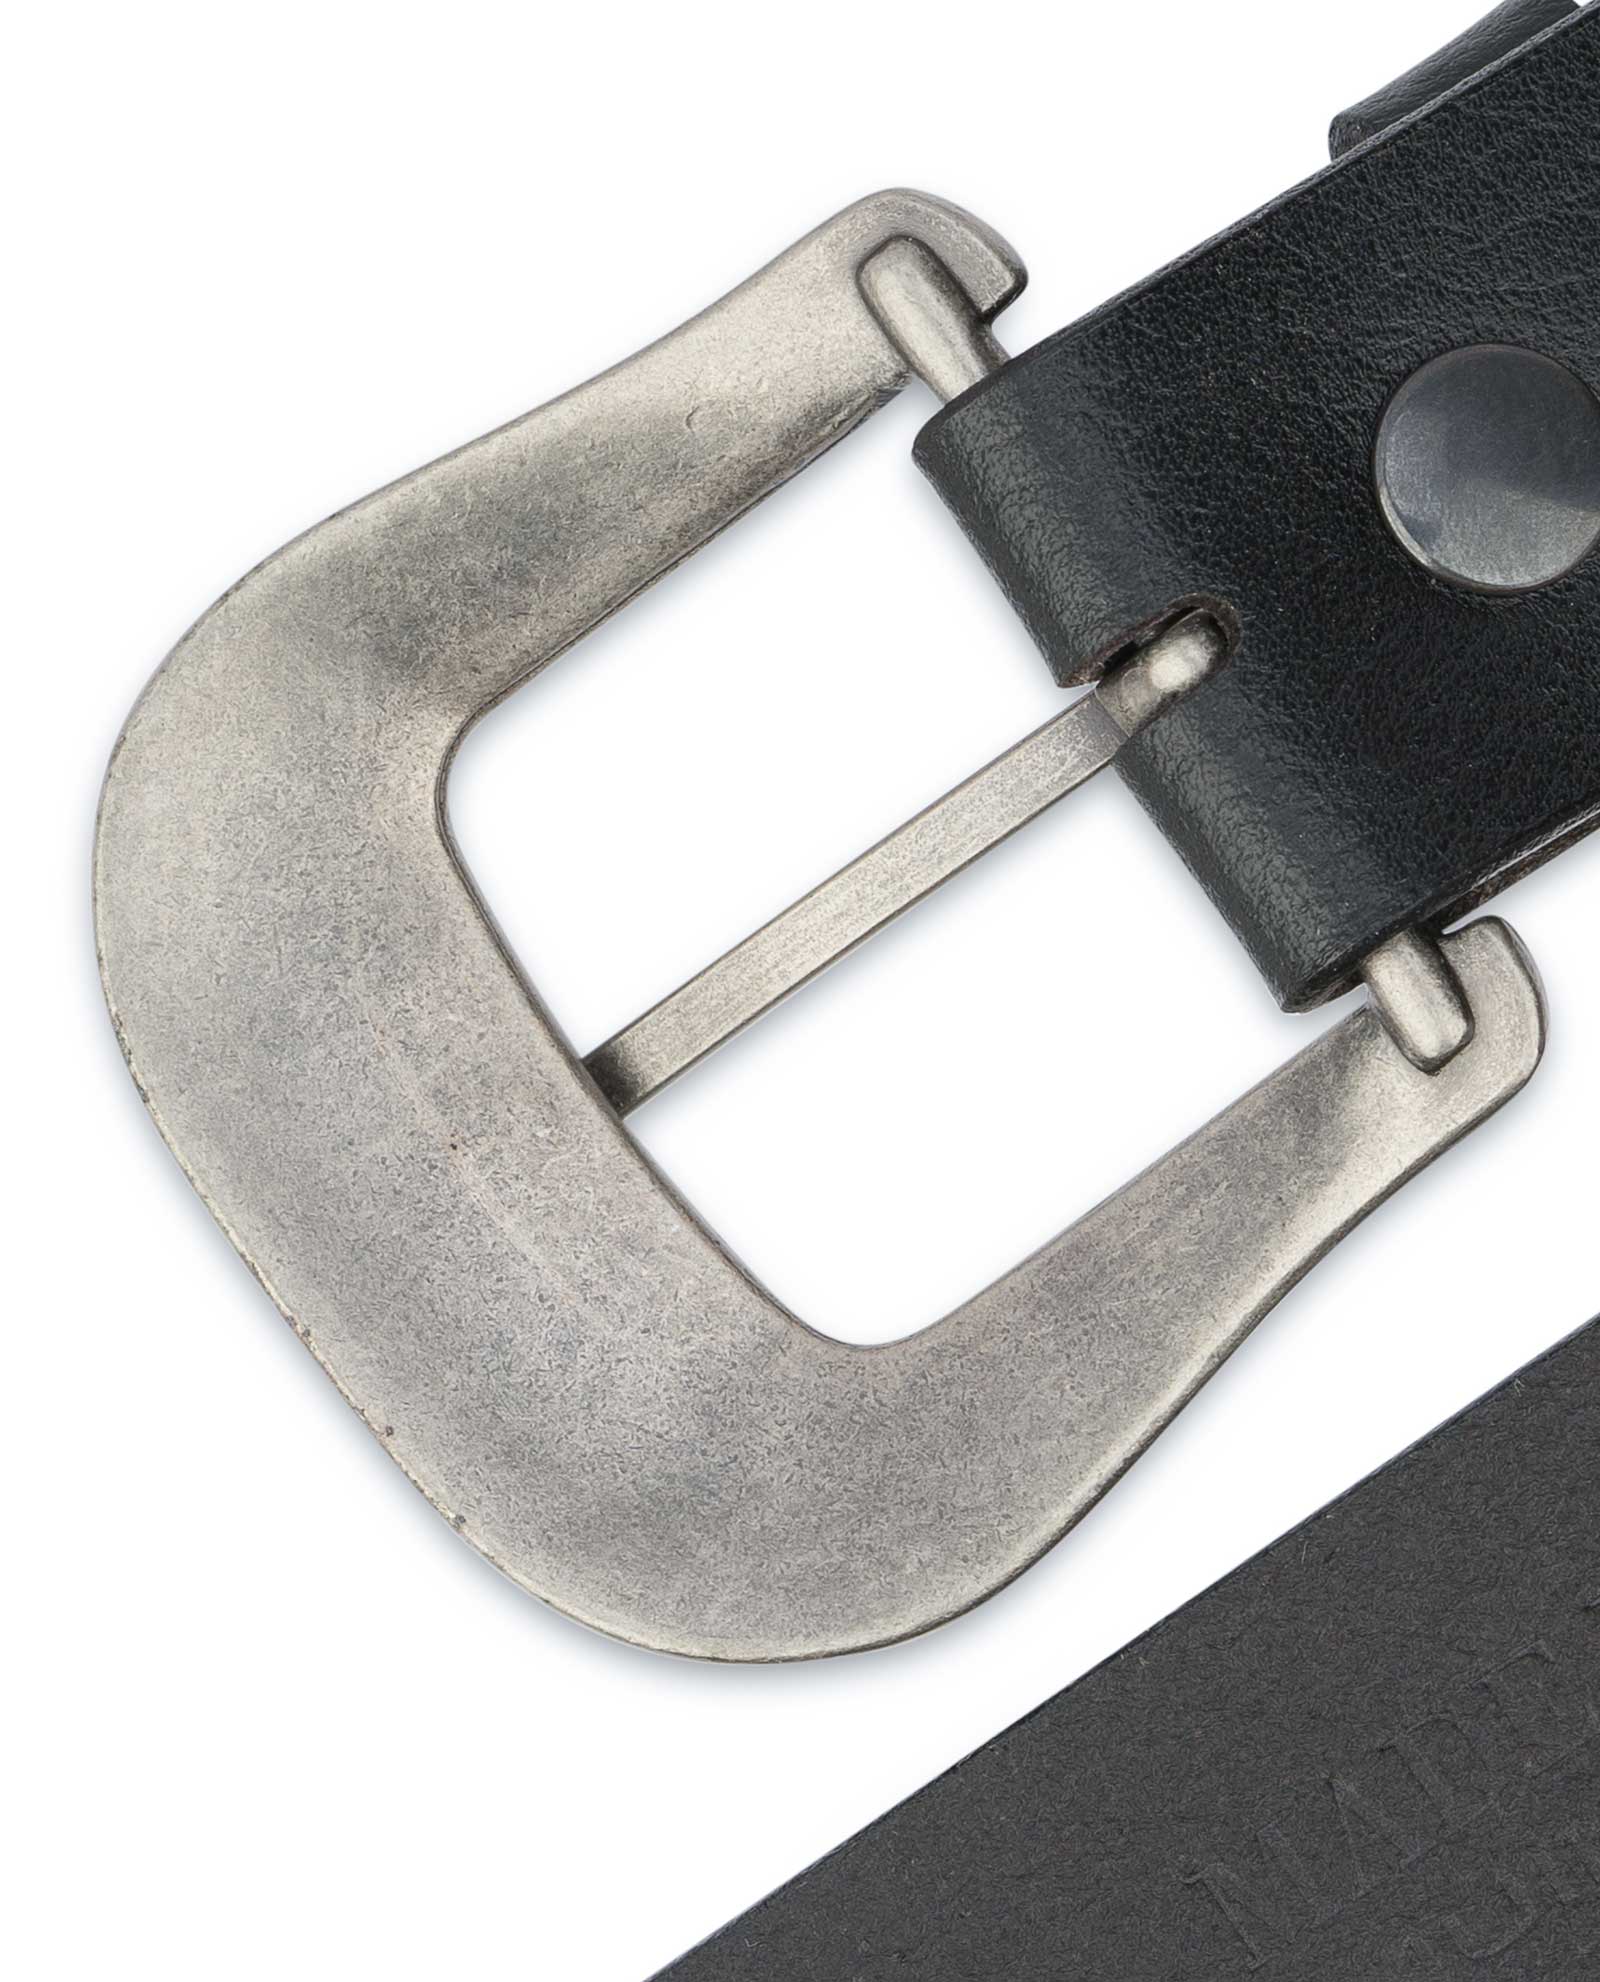 removable belt buckle belt